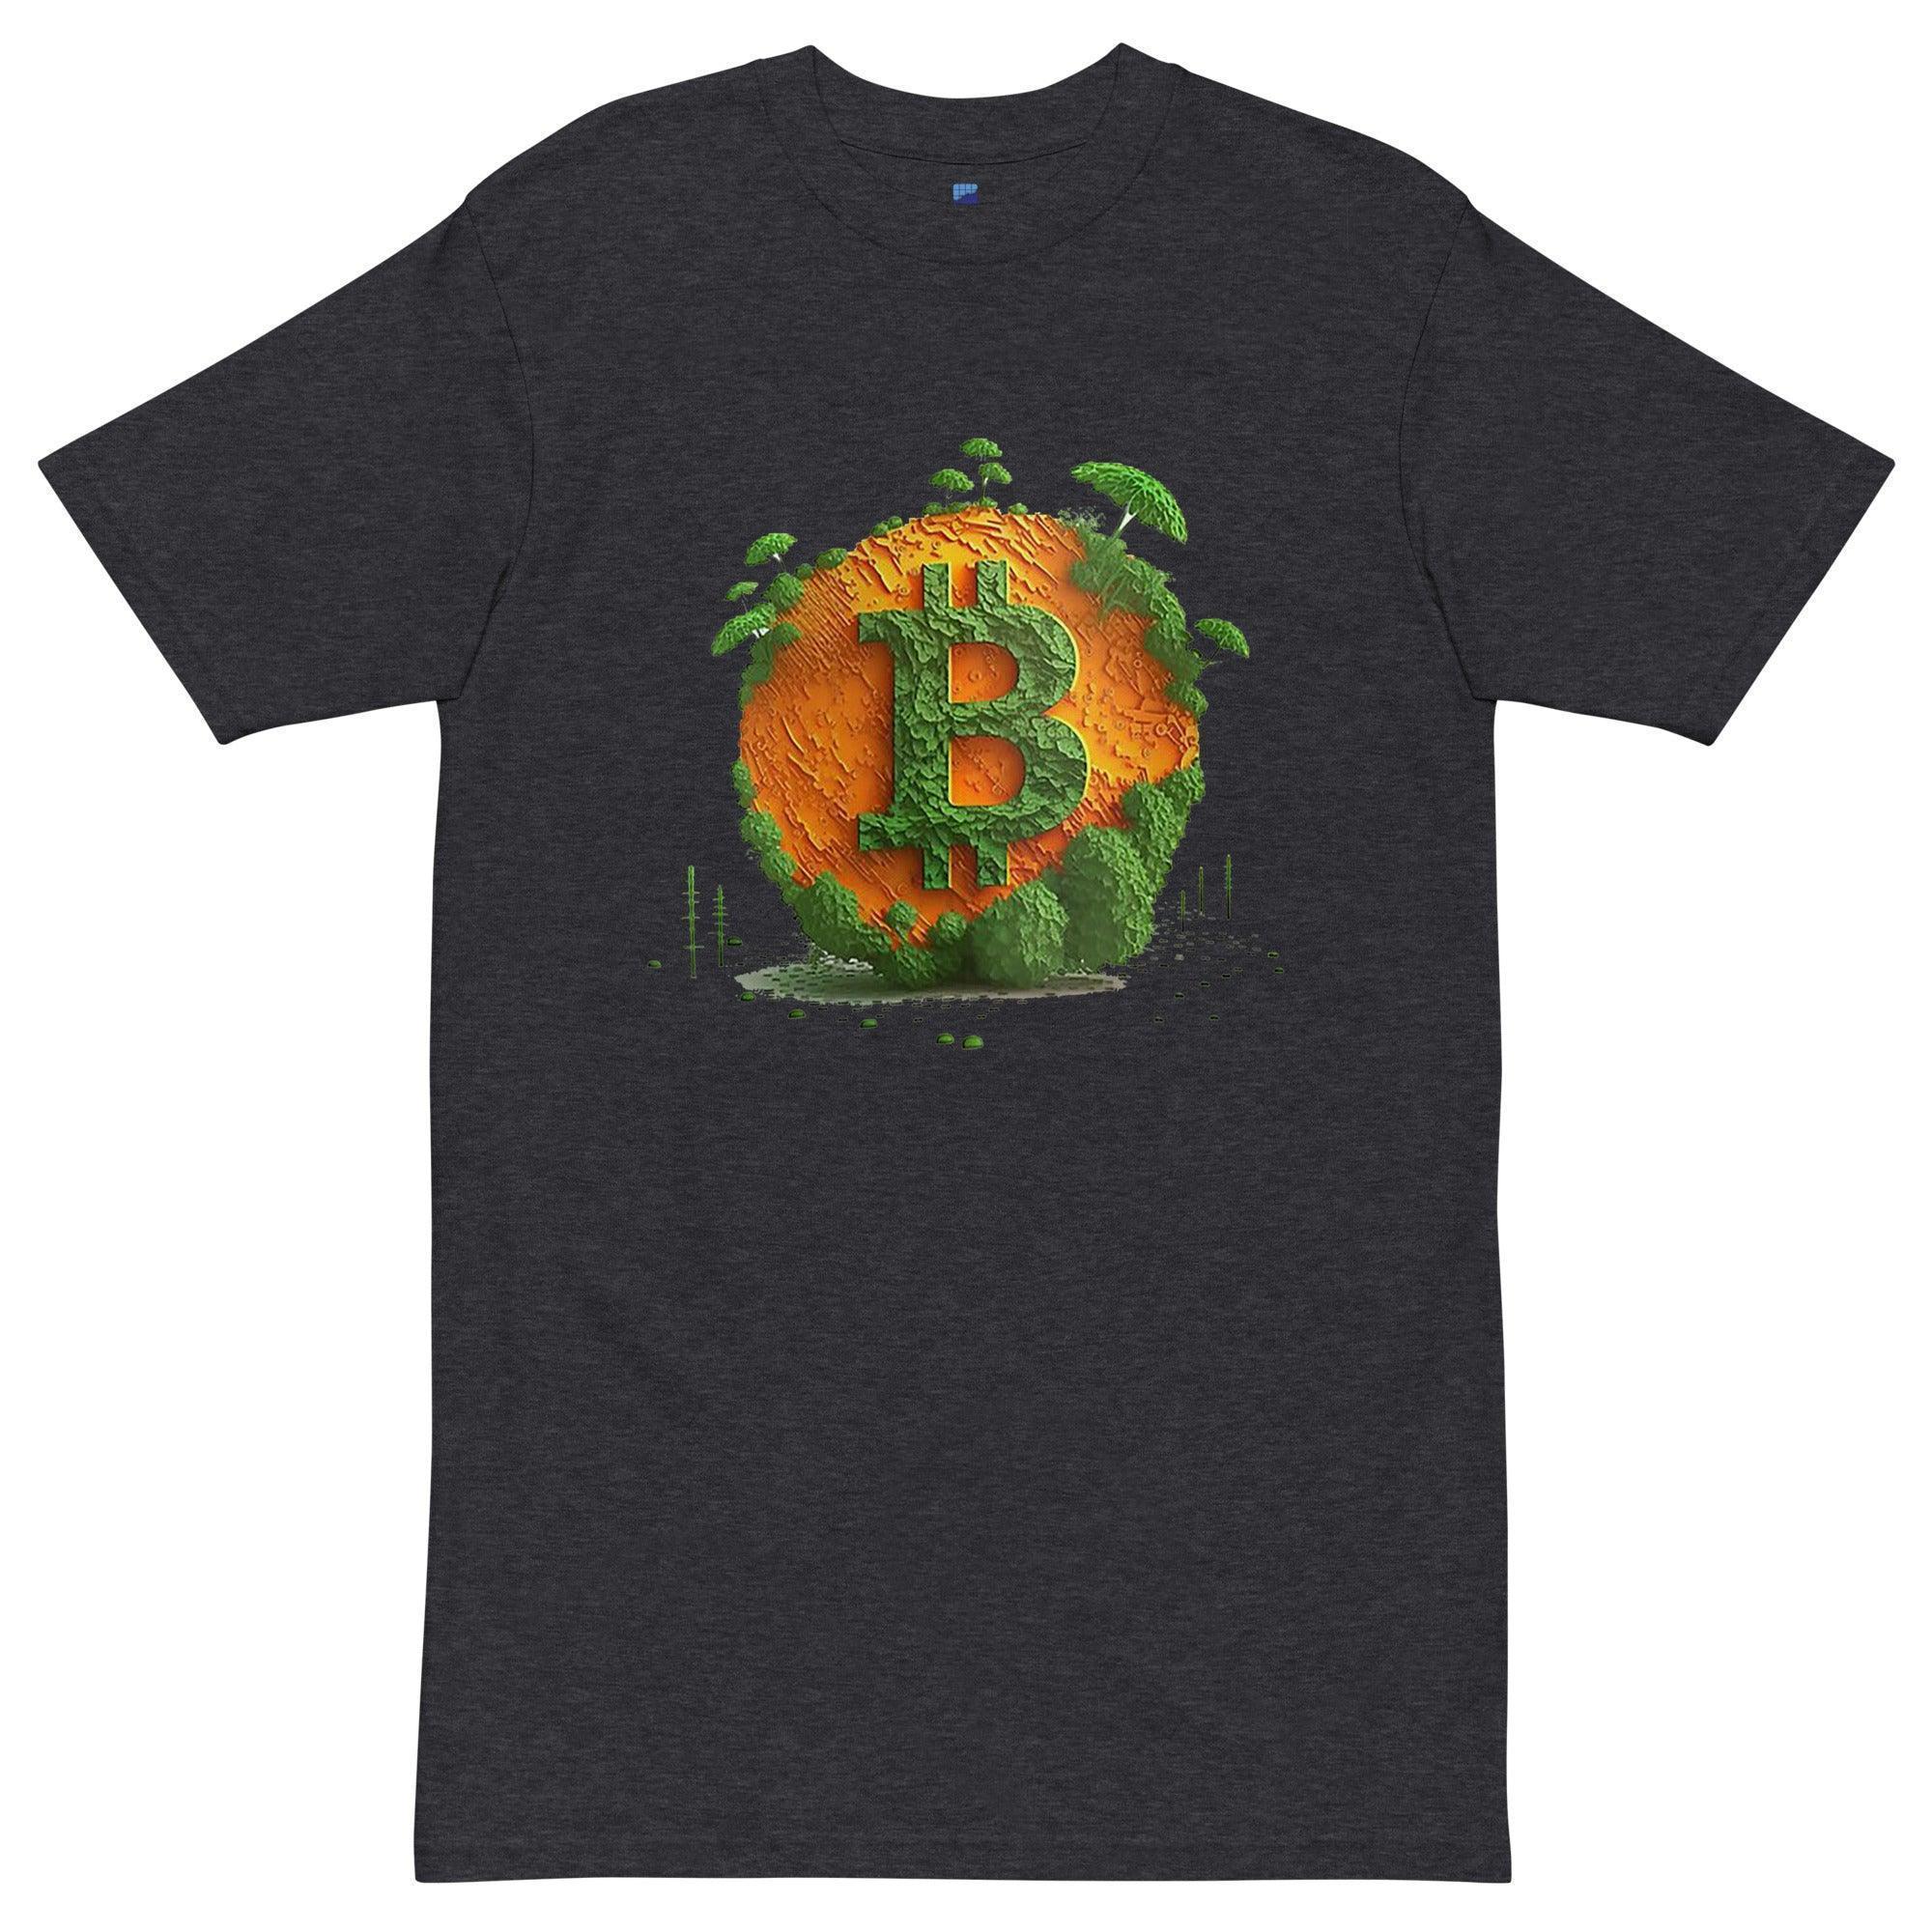 Bitcoin Island Art T-Shirt - InvestmenTees